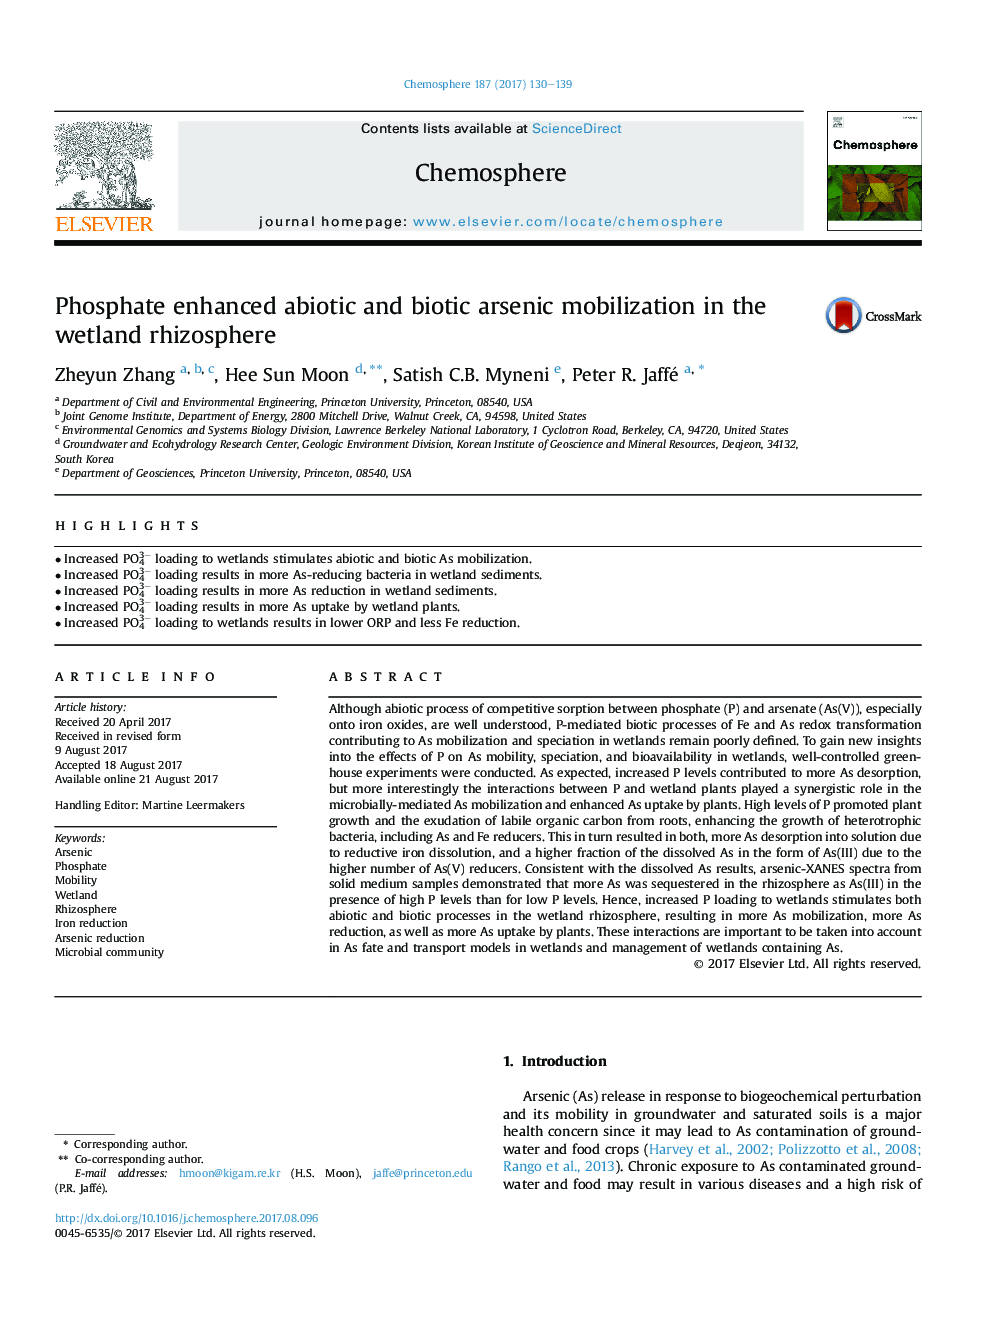 Phosphate enhanced abiotic and biotic arsenic mobilization in the wetland rhizosphere